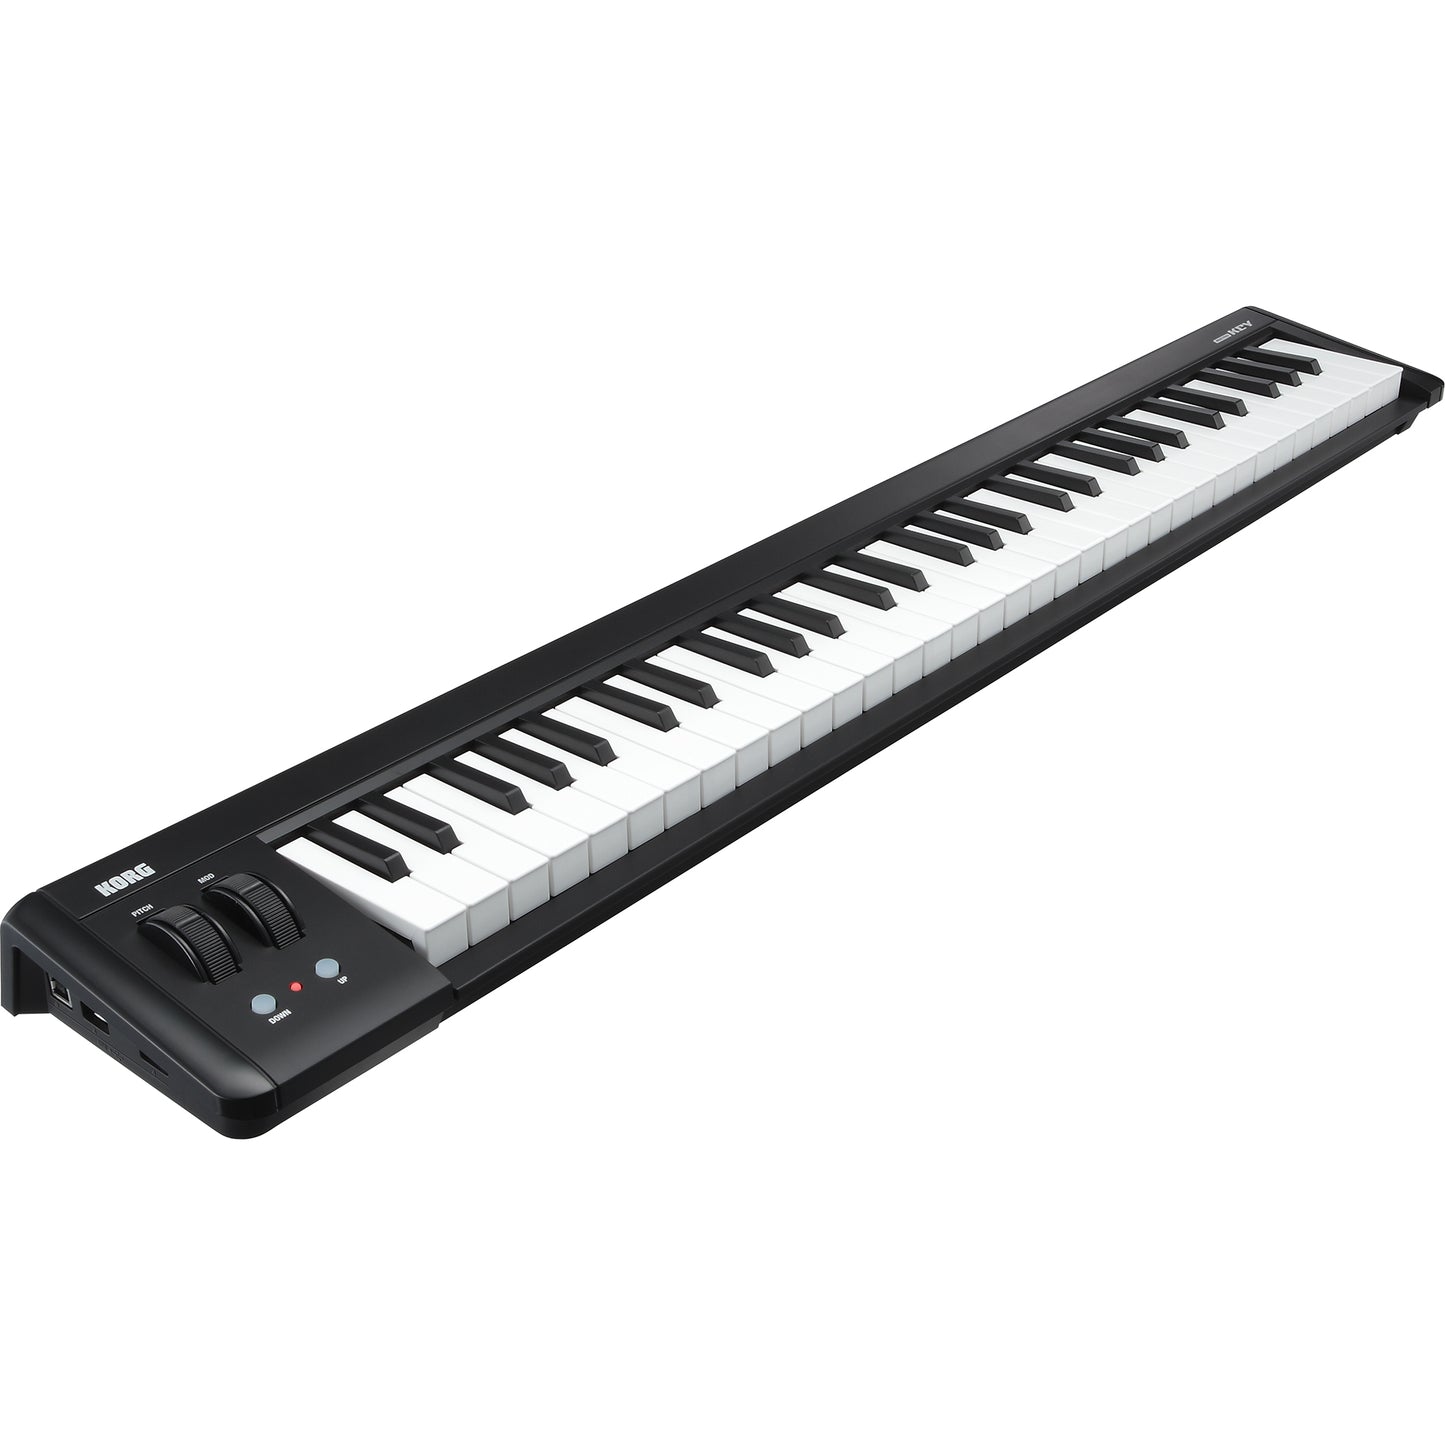 Korg microKEY2 61-Key Compact MIDI Keyboard